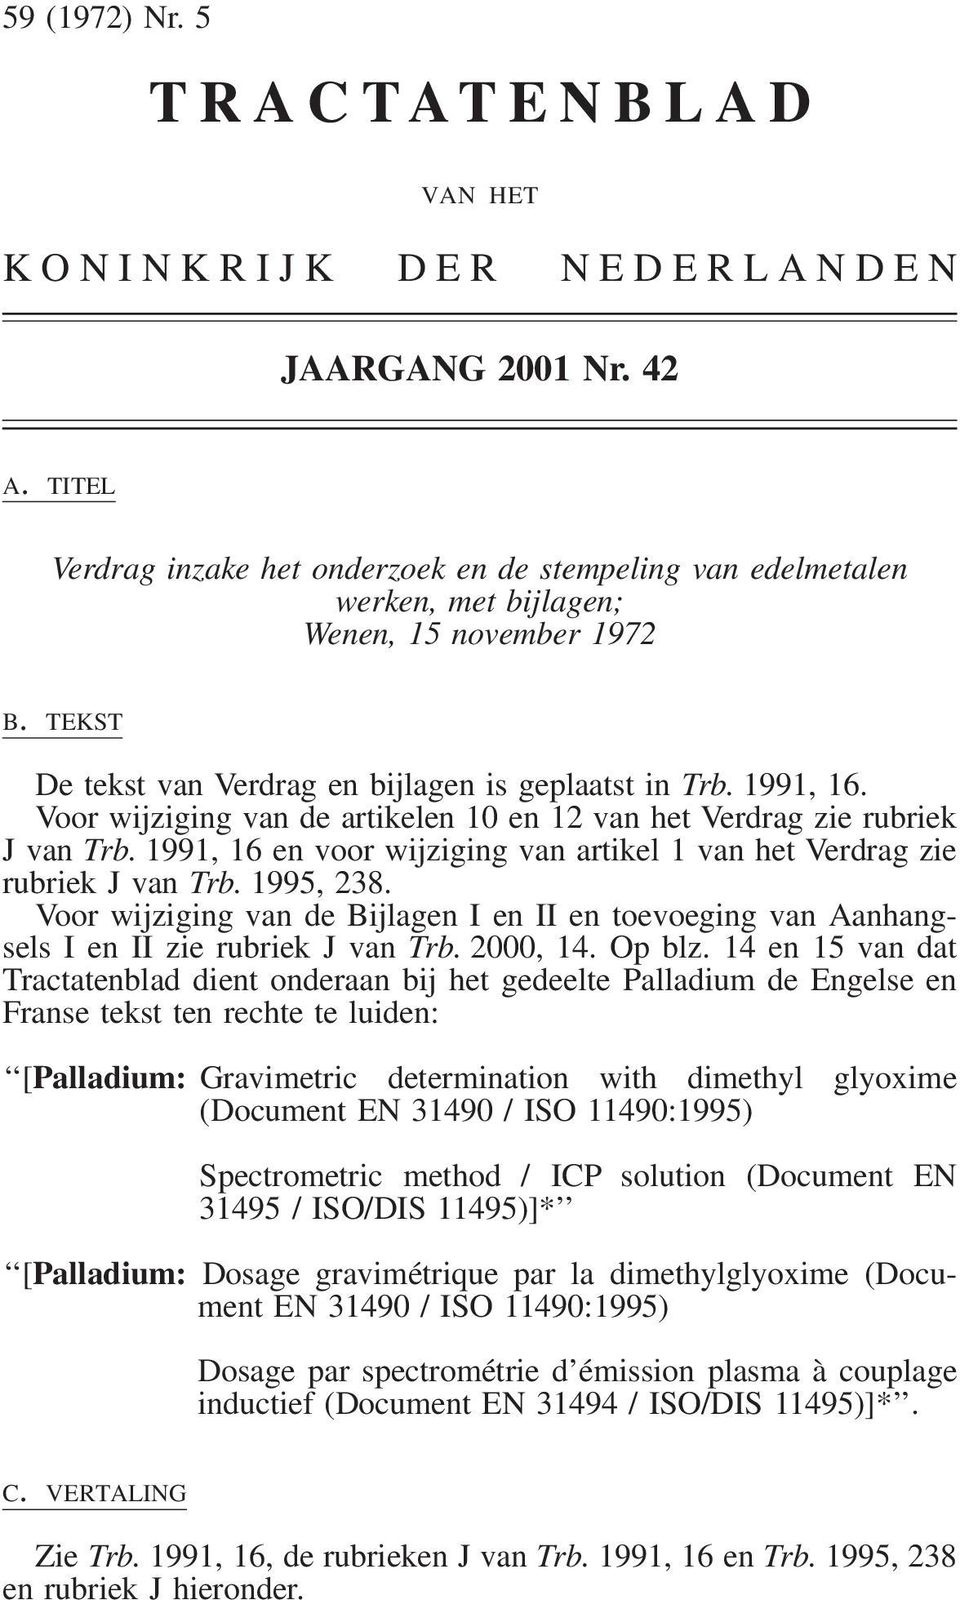 Voor wijziging van de artikelen 10 en 12 van het Verdrag zie rubriek J van Trb. 1991, 16 en voor wijziging van artikel 1 van het Verdrag zie rubriek J van Trb. 1995, 238.